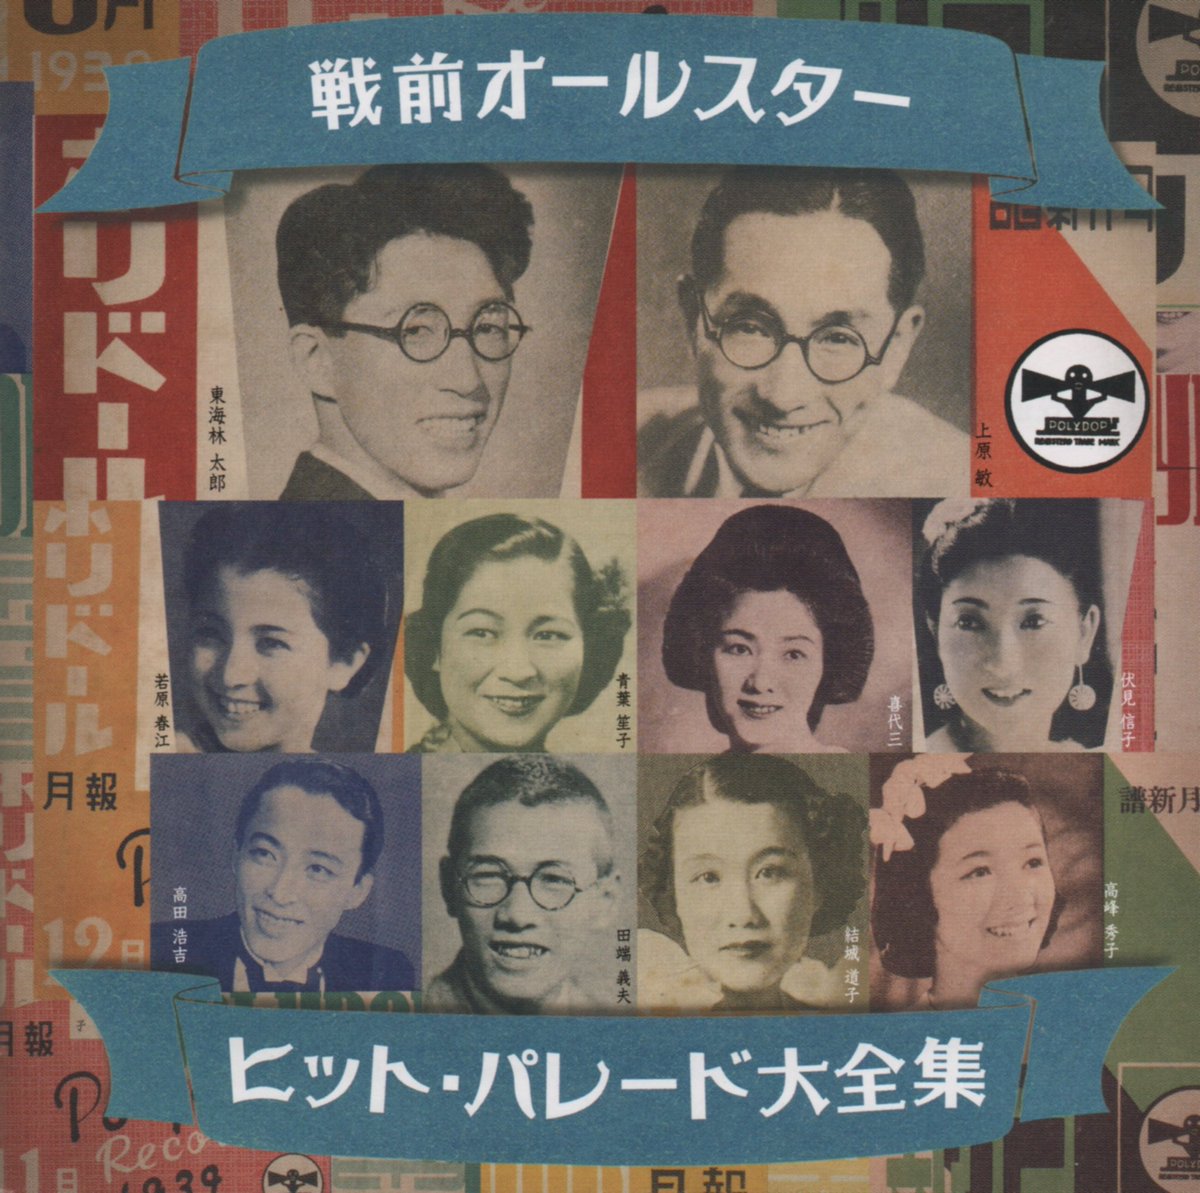 #Nowplaying 浅草可愛いや - 日本橋きみ栄 / 日本ポリドール管弦楽団
小粋な1曲。CDだとこのアルバムぐらいでしか聴けないのかな。